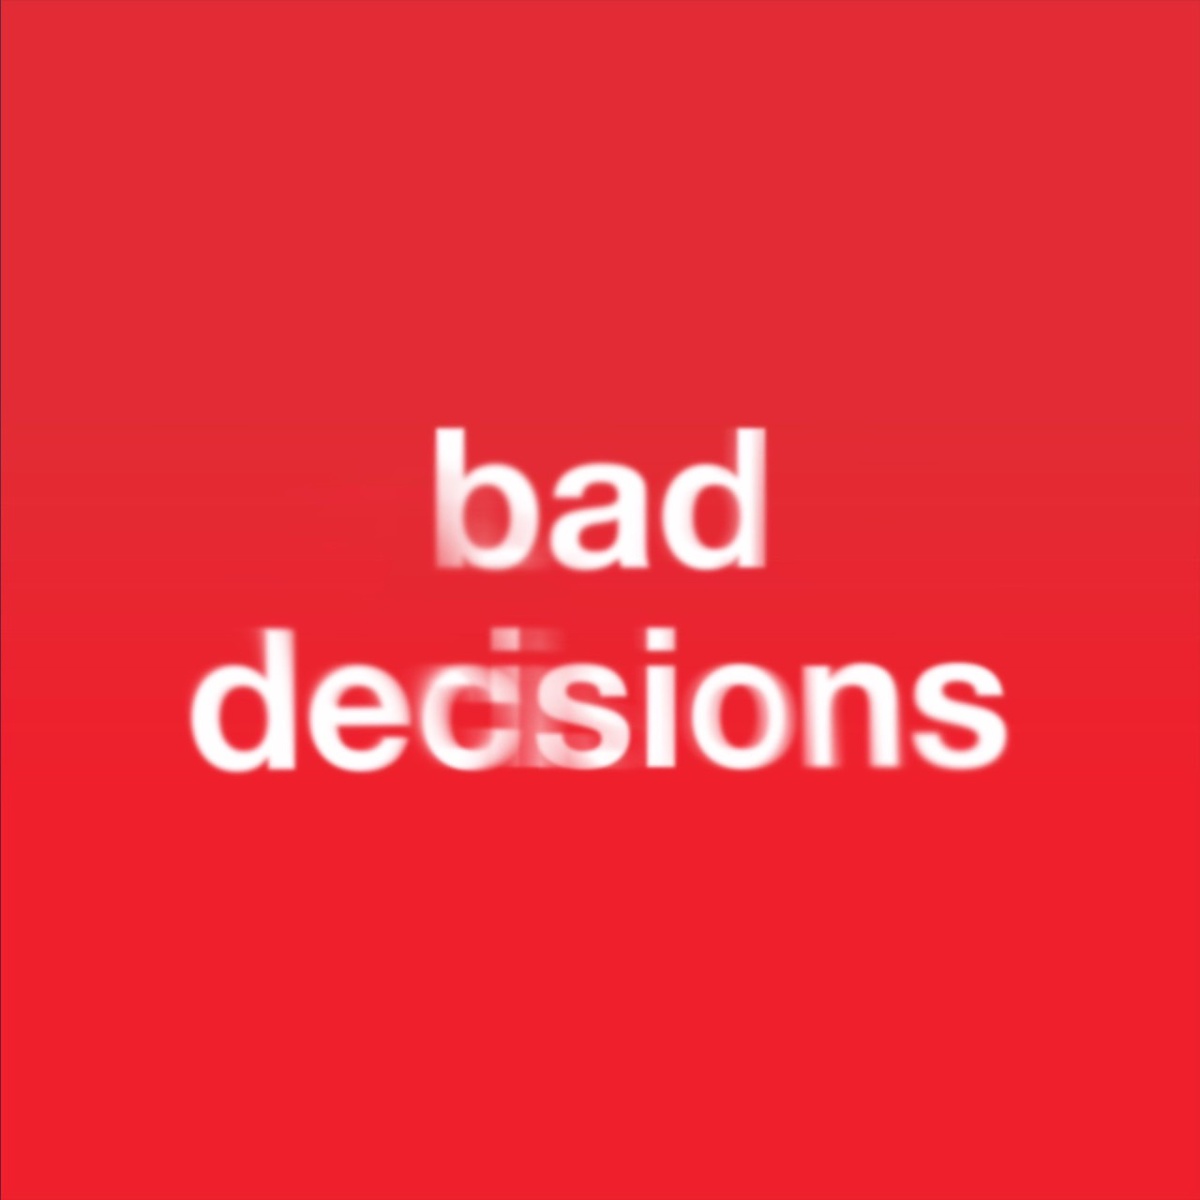 Bad Decisions การร่วมงานกันครั้งแรกระหว่างศิลปิน และโปรดิวเซอร์ชื่อดังอย่าง benny blanco, Jin, Jimin, V , Jung Kook เมมเบอร์จาก BTS วง K-POP อันดับหนึ่ง